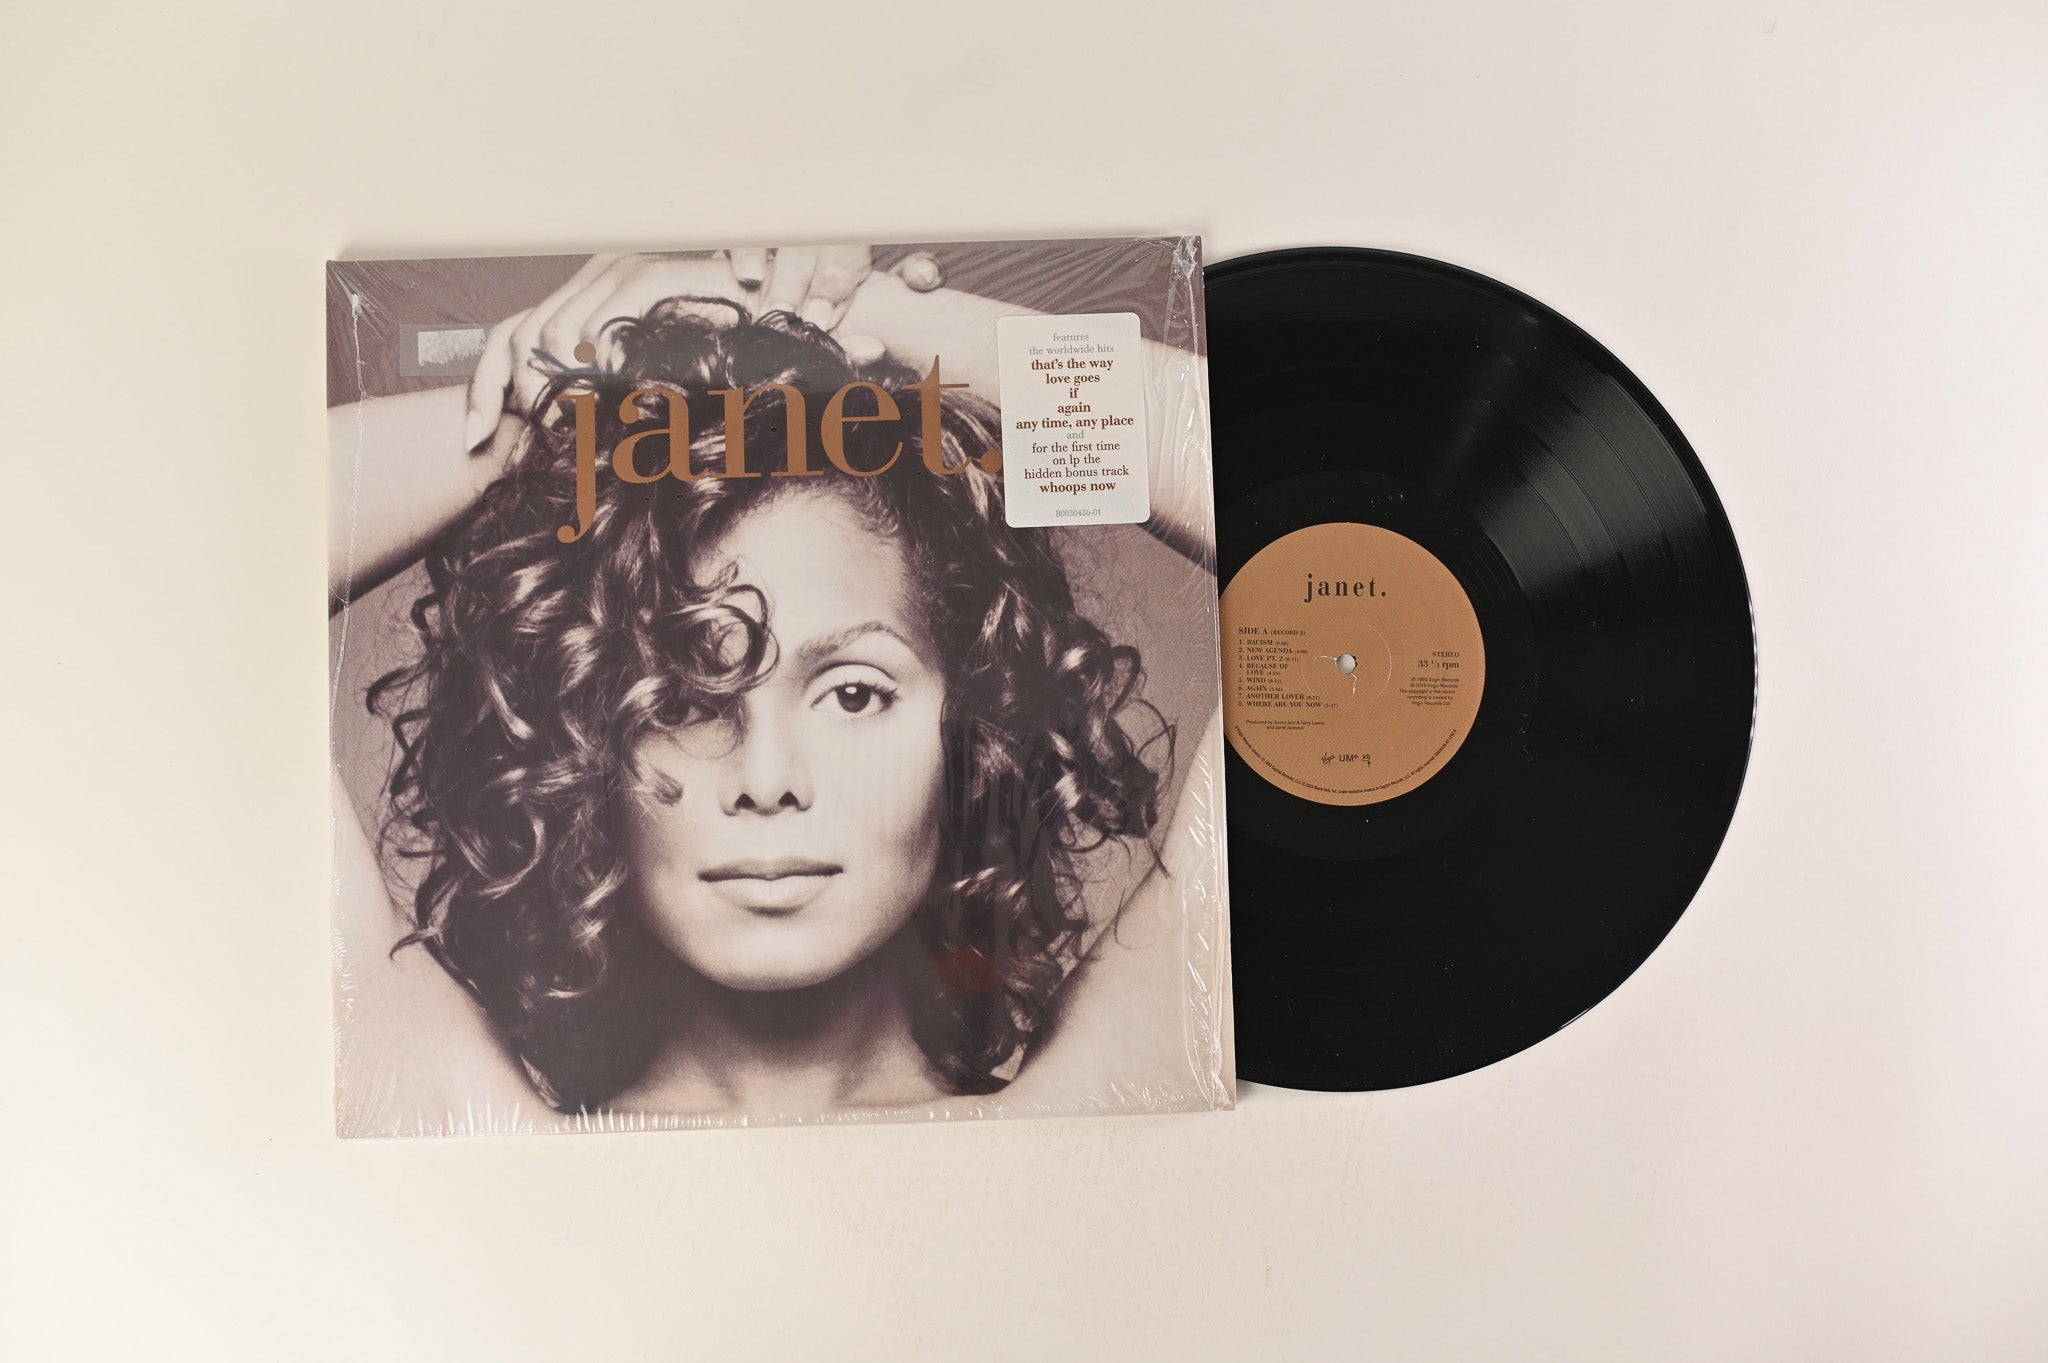 Janet Jackson - Janet. on Virgin Reissue